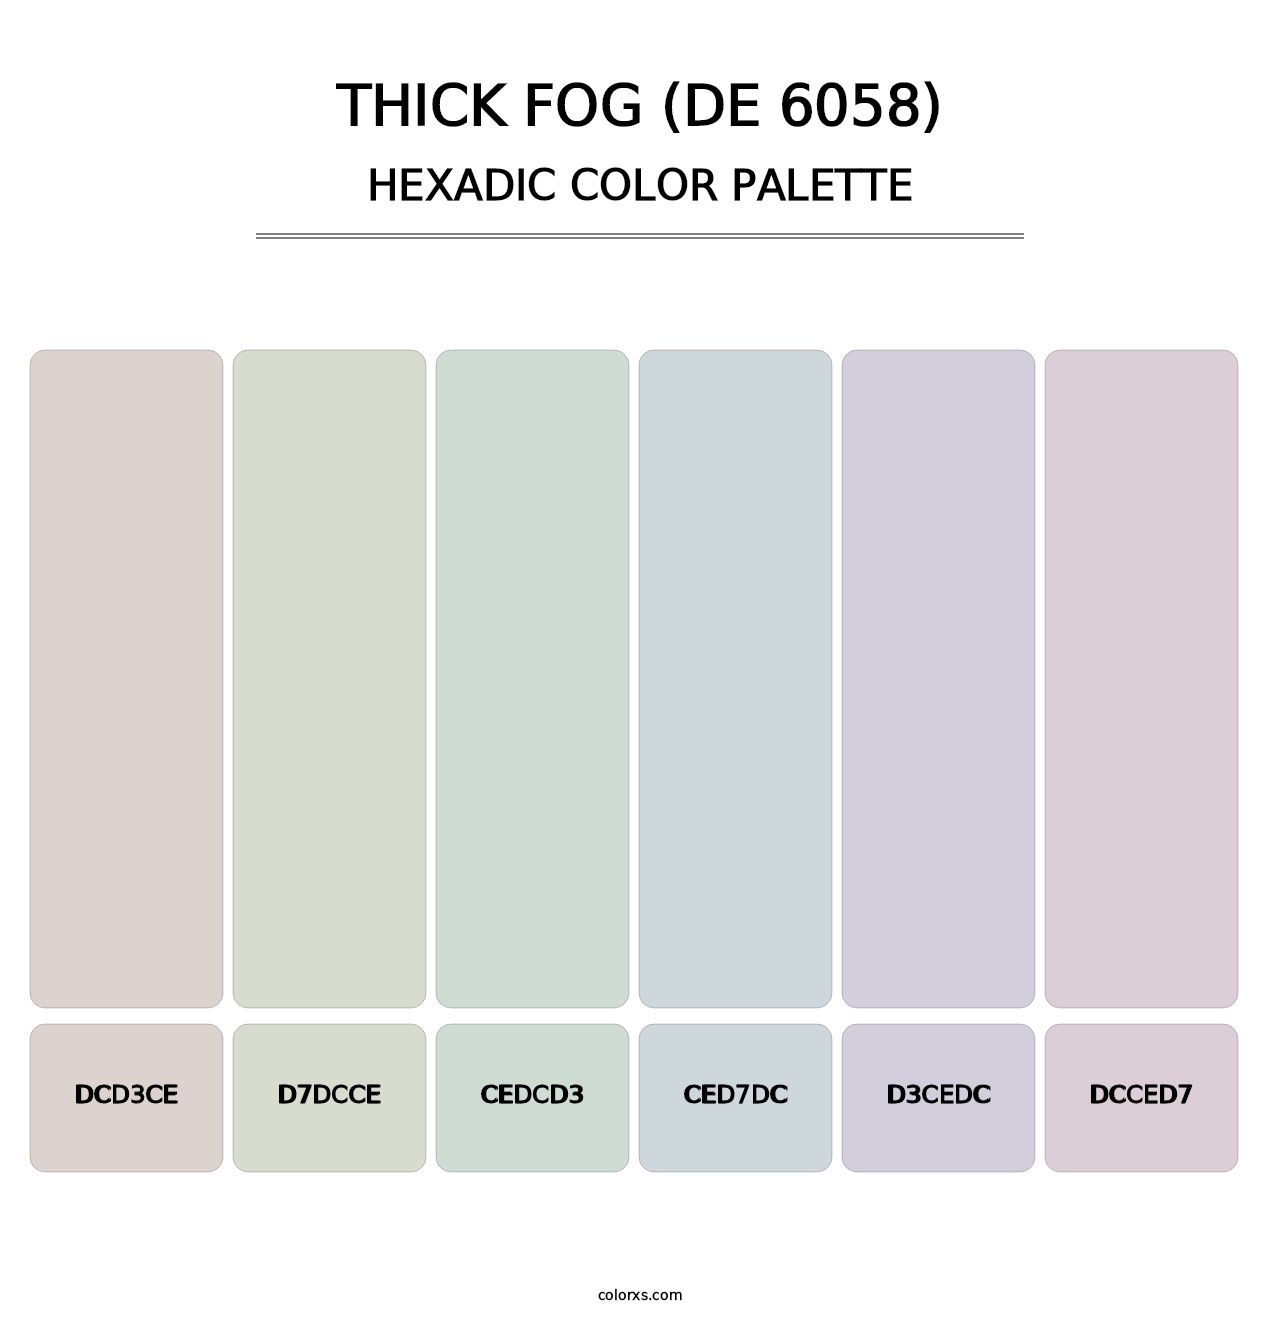 Thick Fog (DE 6058) - Hexadic Color Palette